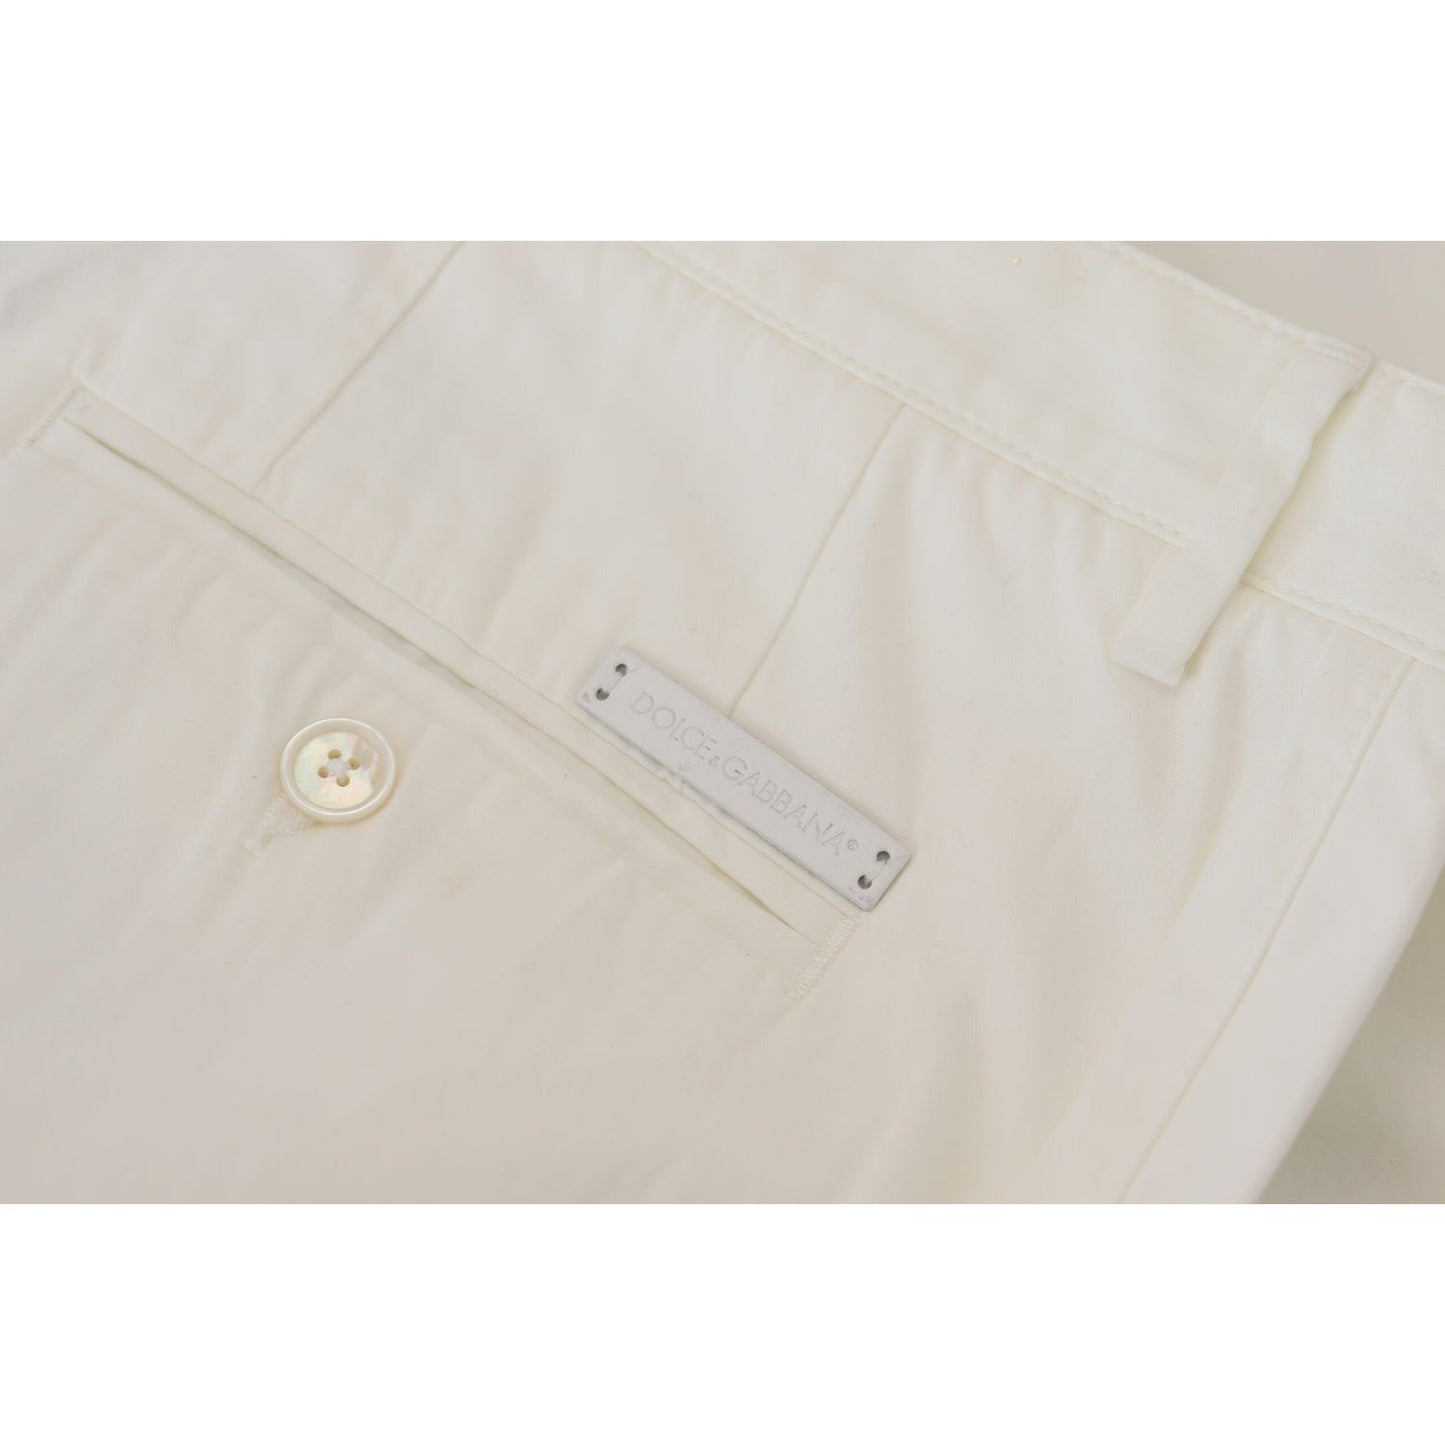 Dolce & Gabbana Elegant White Cotton Chino Dress Pants white-cotton-dress-formal-men-pants